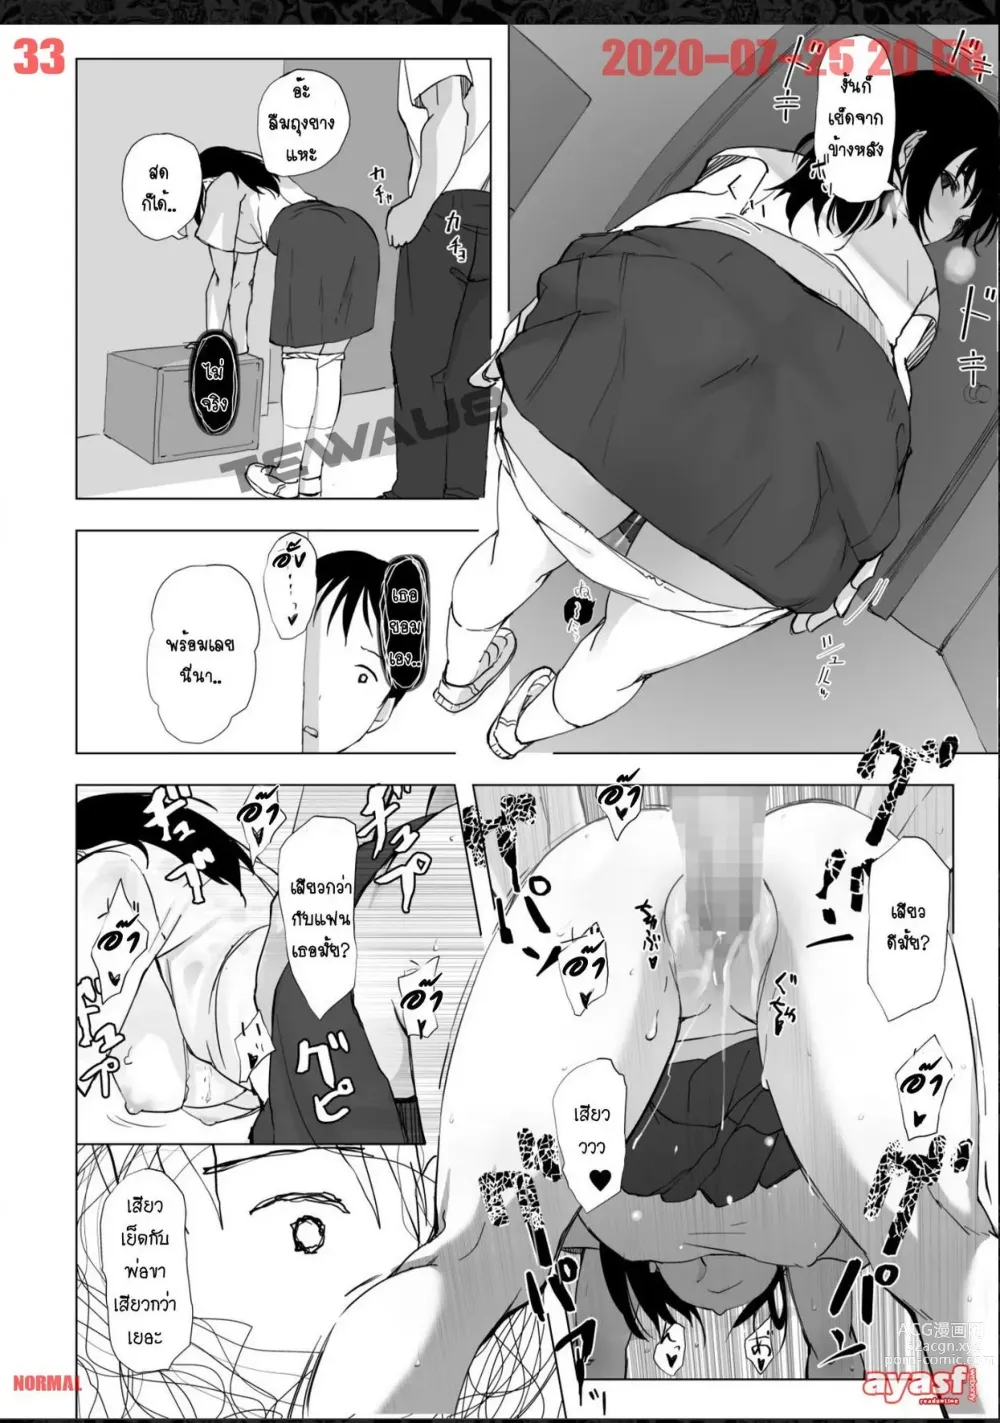 Page 33 of doujinshi เมื่อ แฟนผม กับรุ่นพี่ กลายเป็น ครอบครัว เดียวกัน